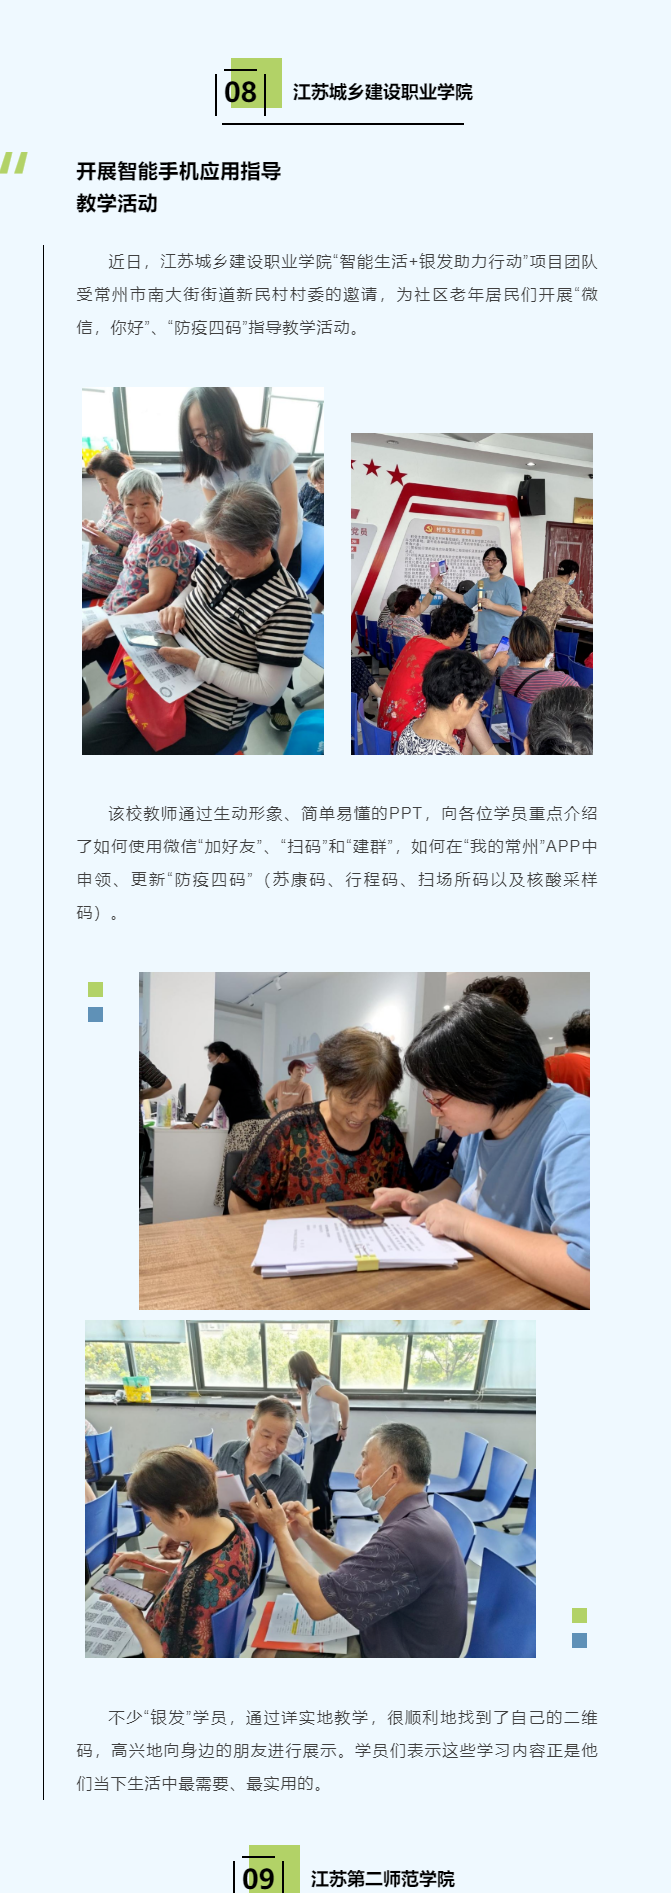 江苏教育官微：BET356体育在线育开展智能手机应用指导教学活动